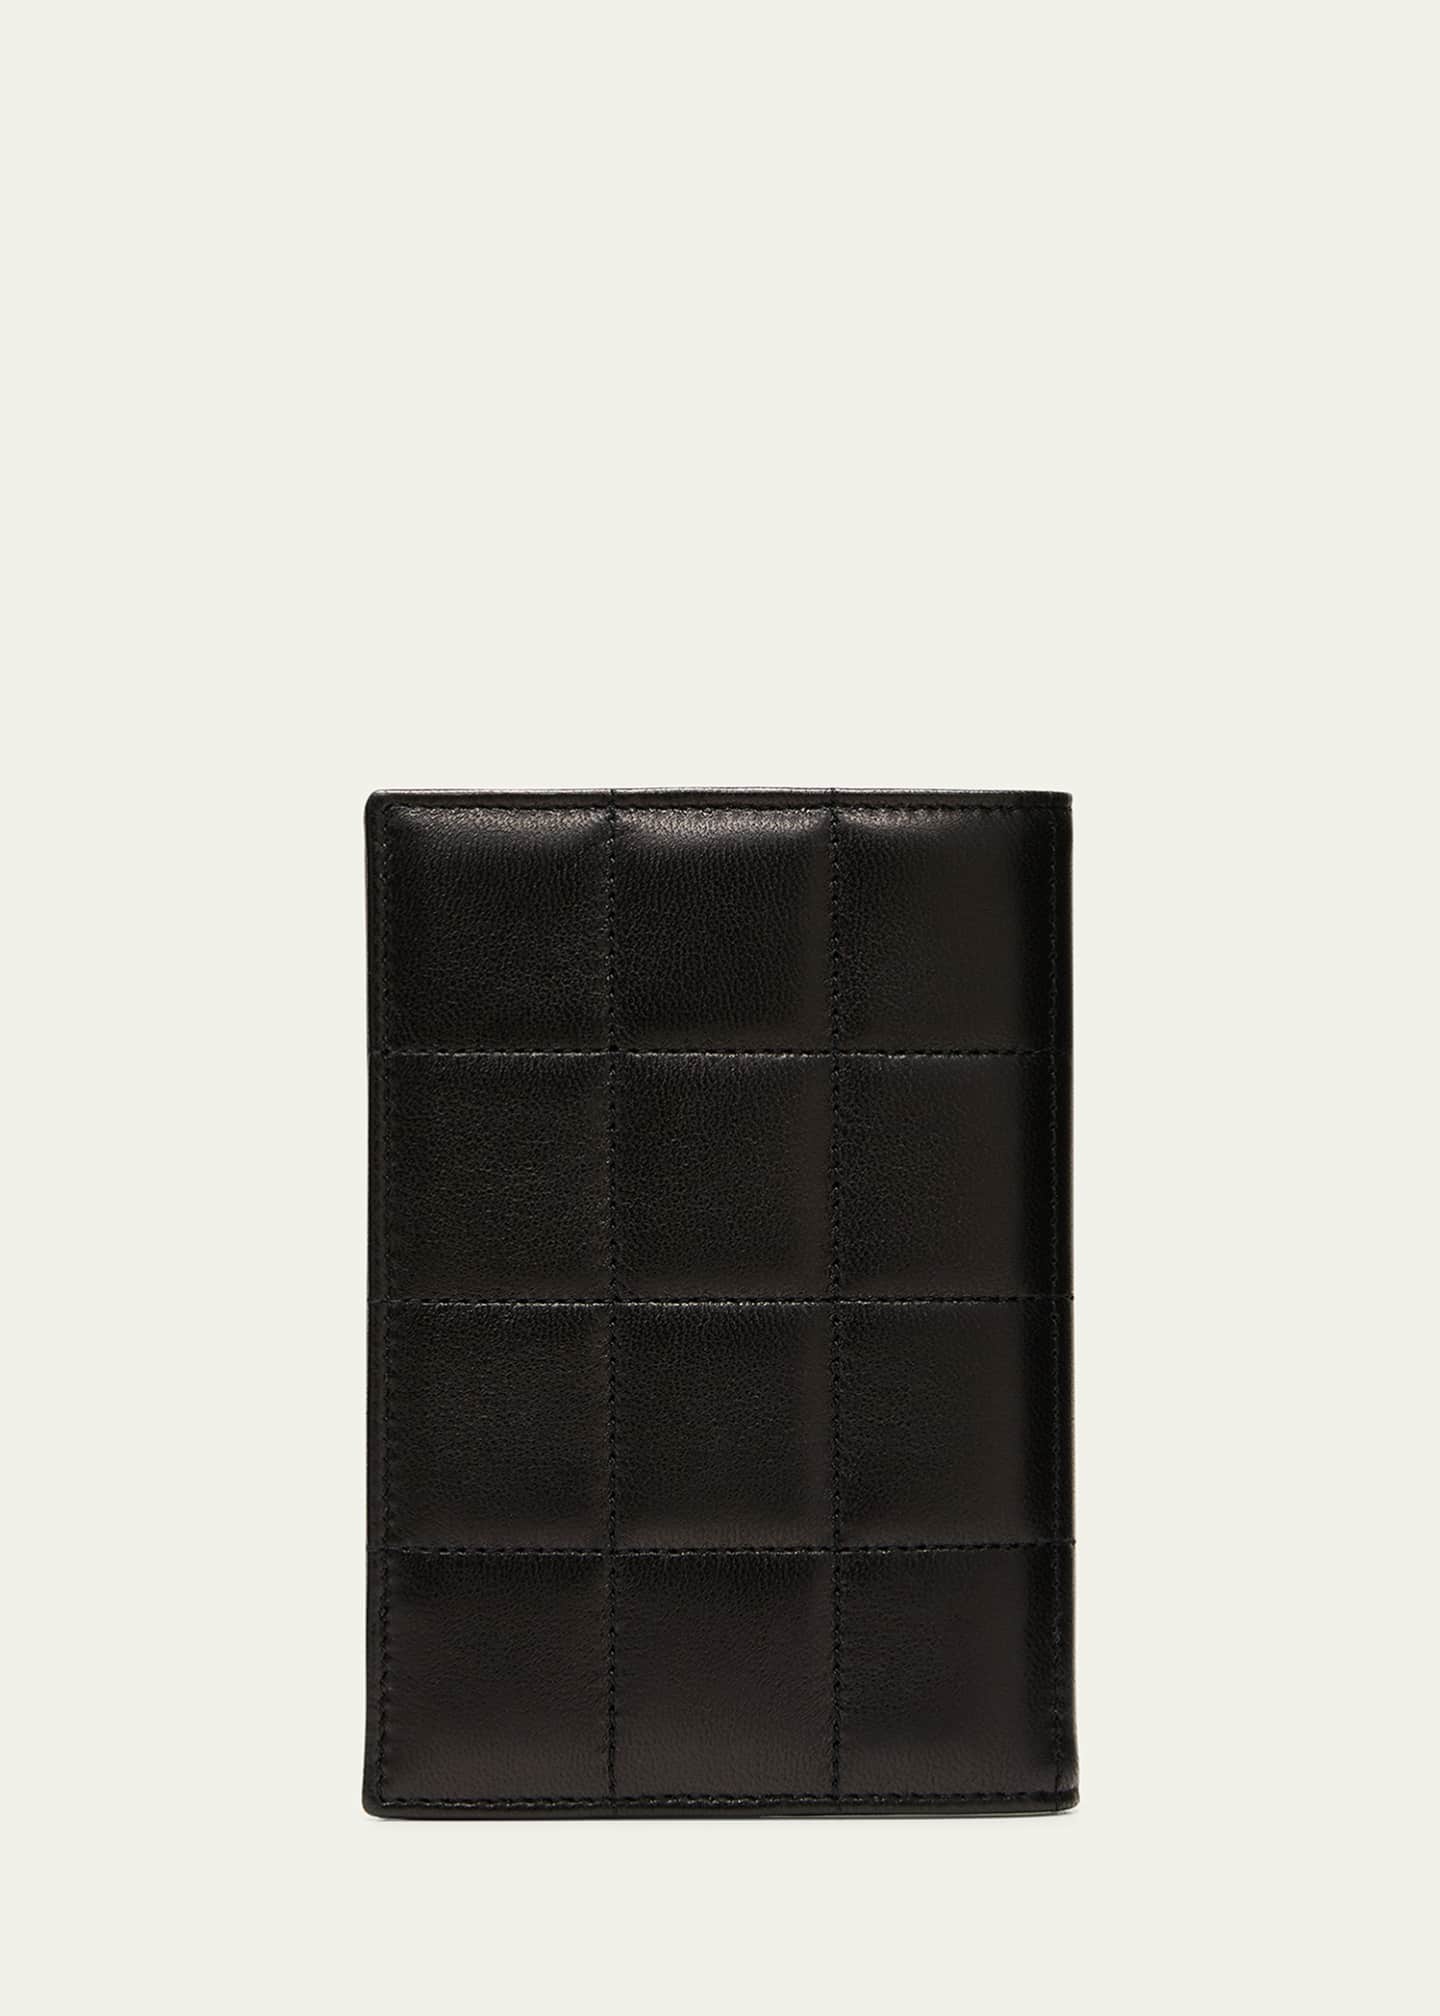 Yves Saint Laurent, Bags, Saint Laurent Passport Case